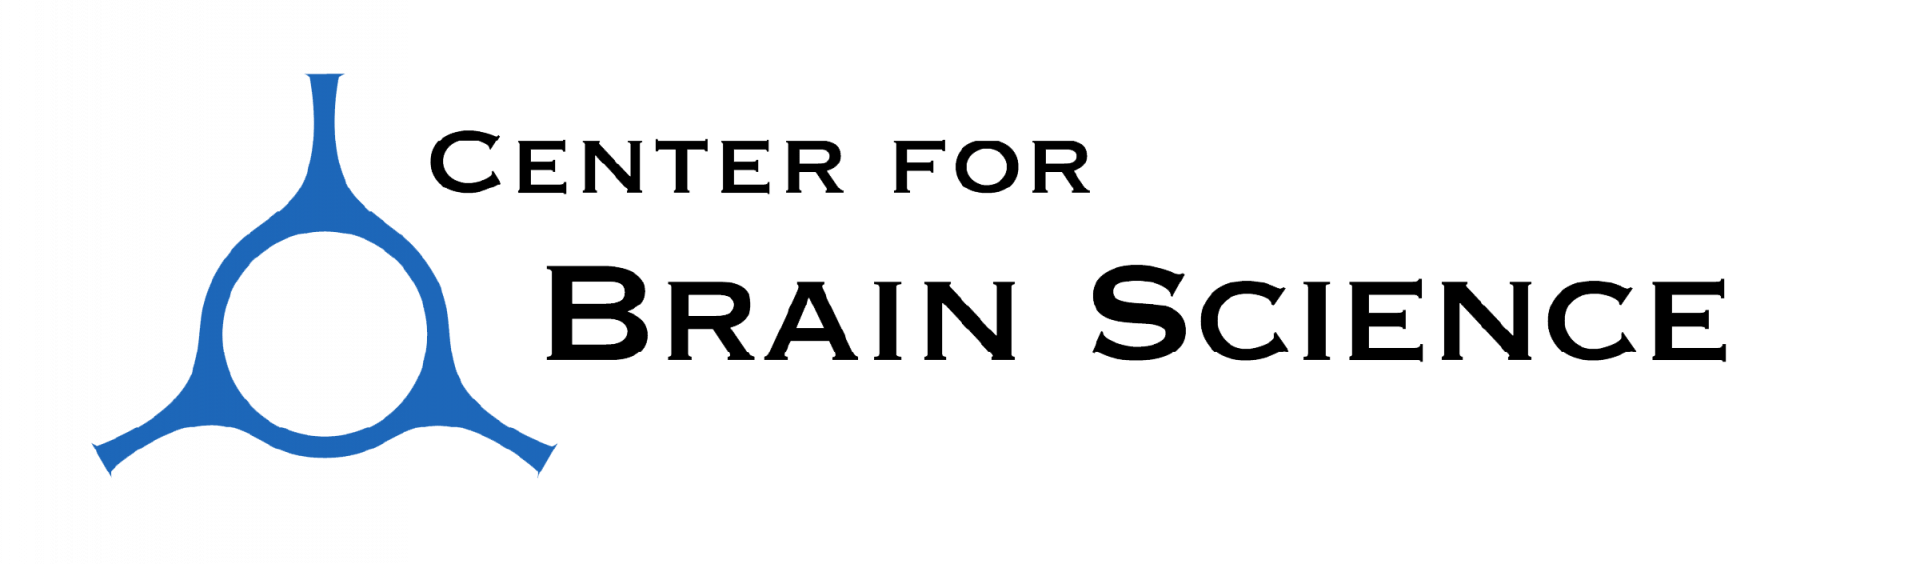 Center for Brain Science Logo